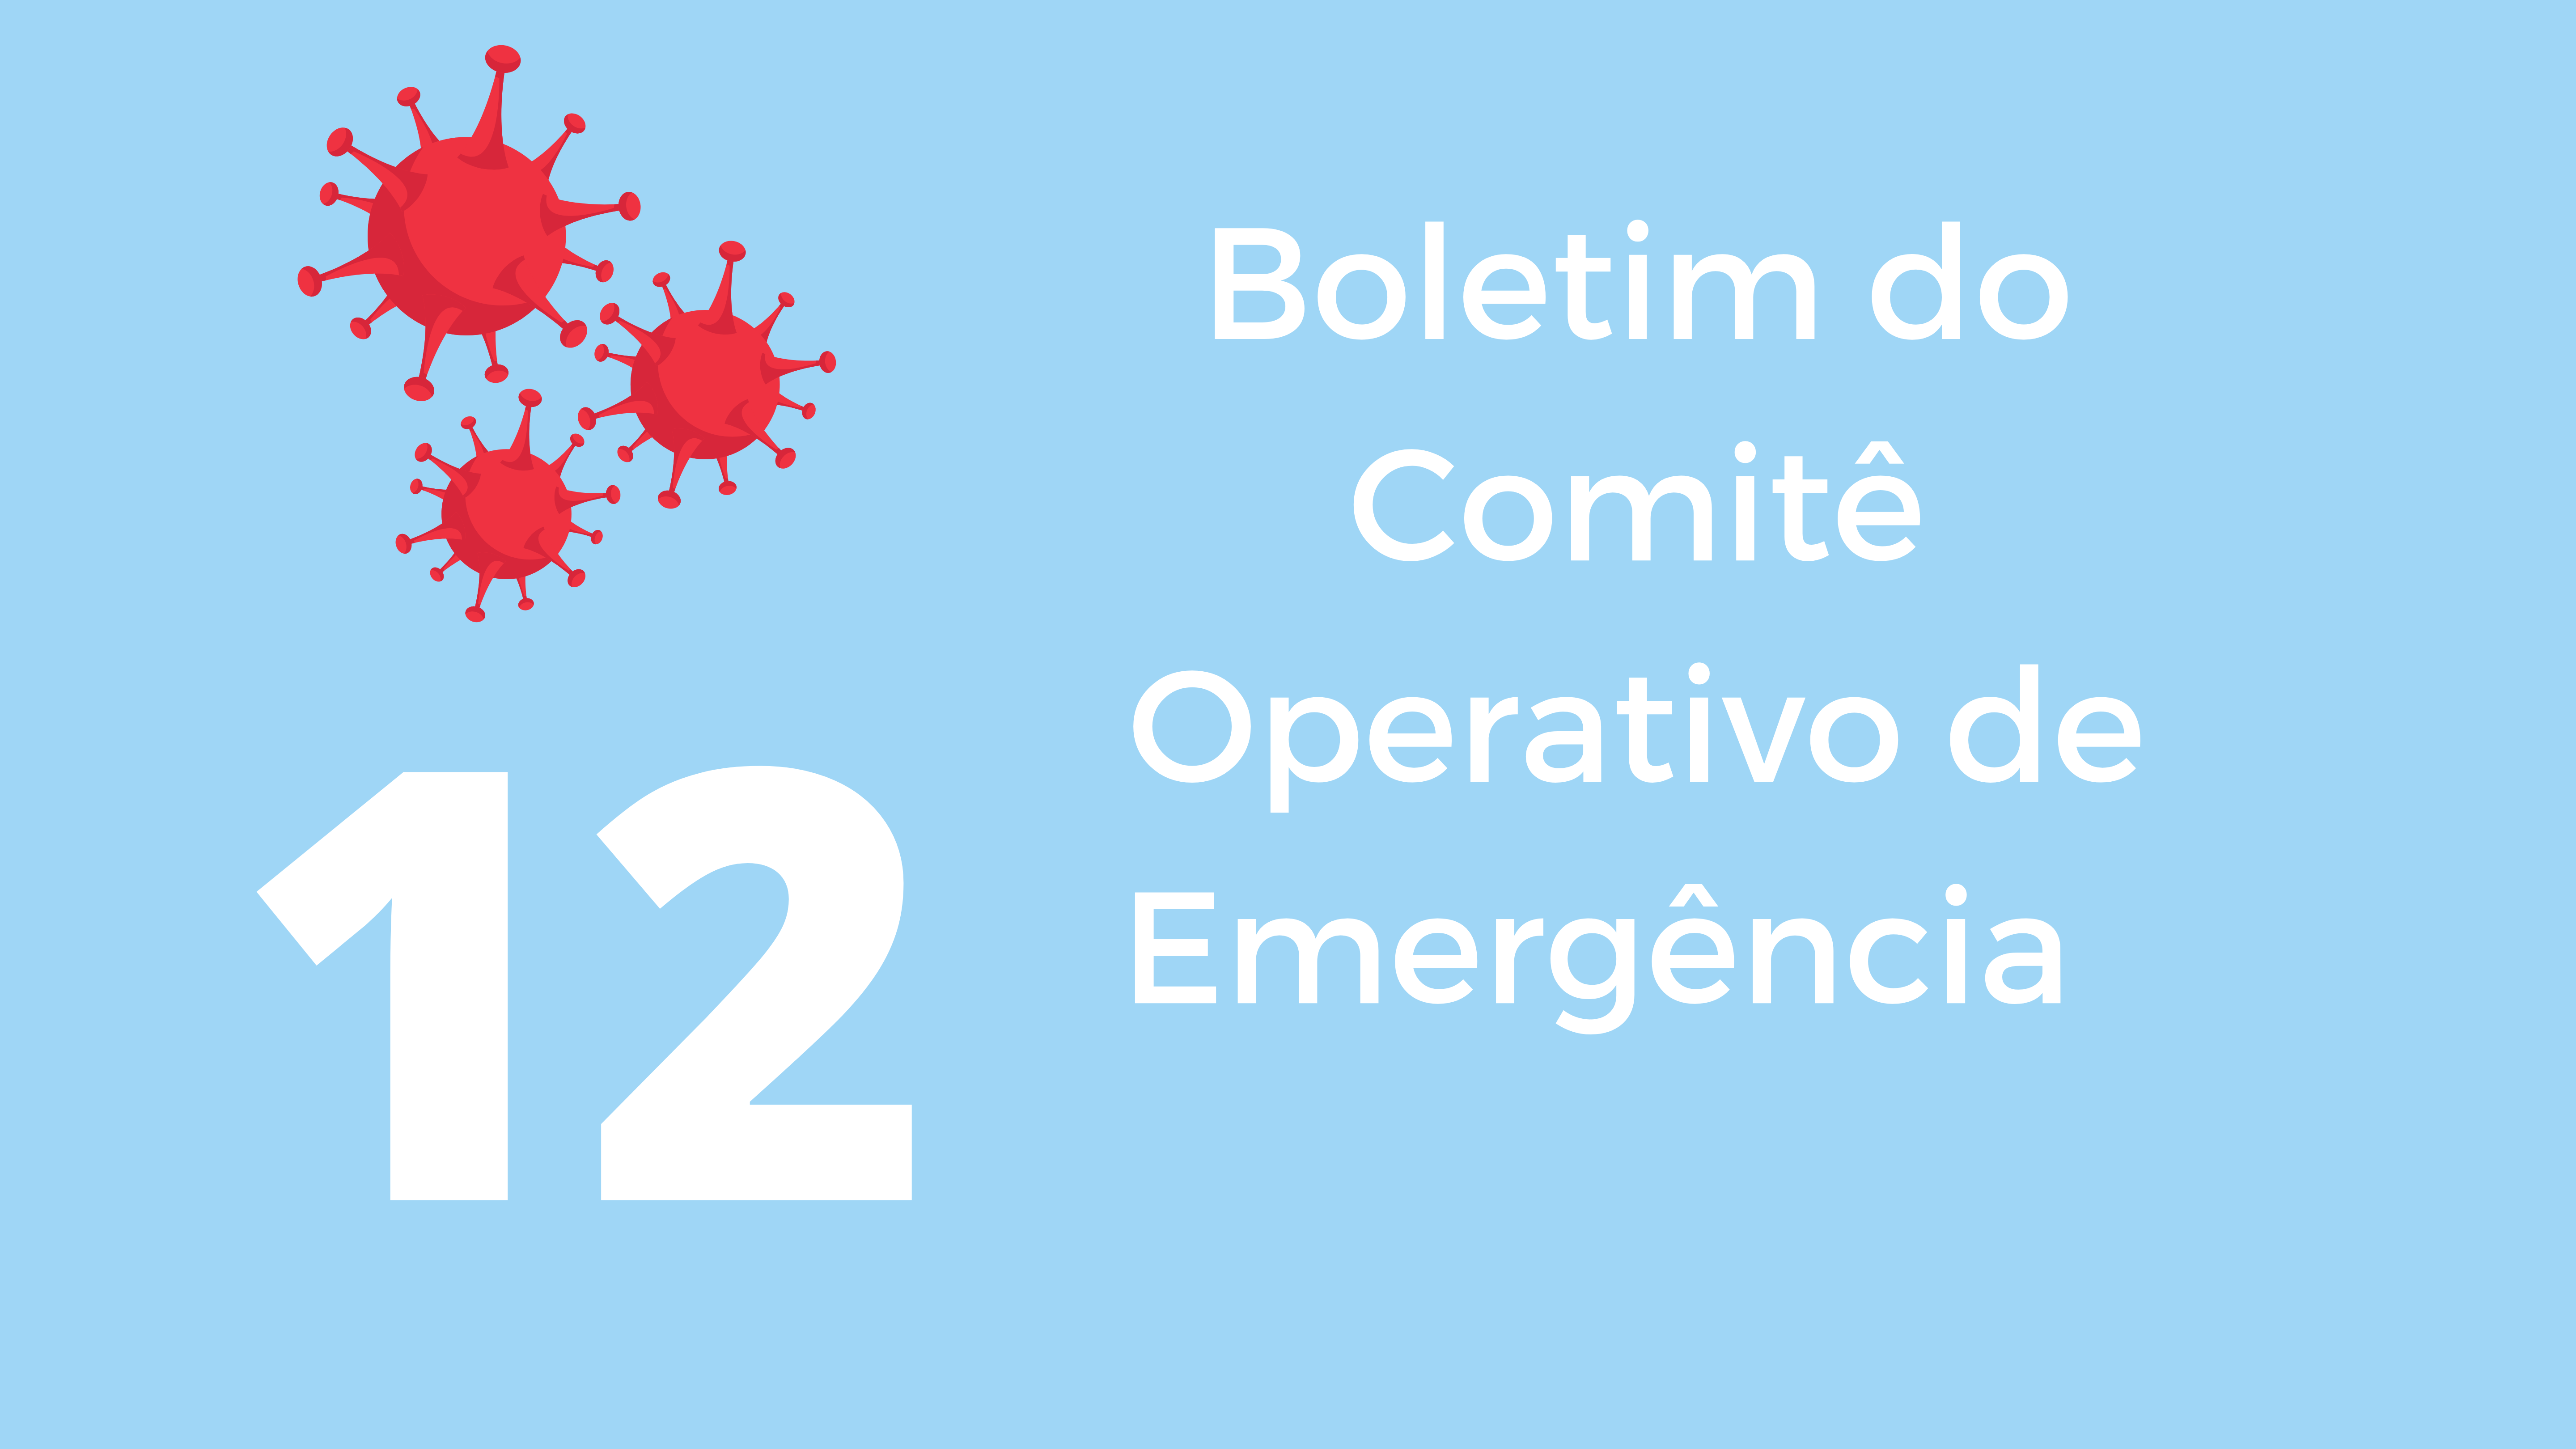 Descrição: sobre fundo azul claro, no canto direito superior, a ilustração, em vermelho, do coronavírus.  Ao lado, em letras brancas, lê-se: "Boletim do Comitê Operativo de Emergência".  Do lado esquerdo, o numeral 12.